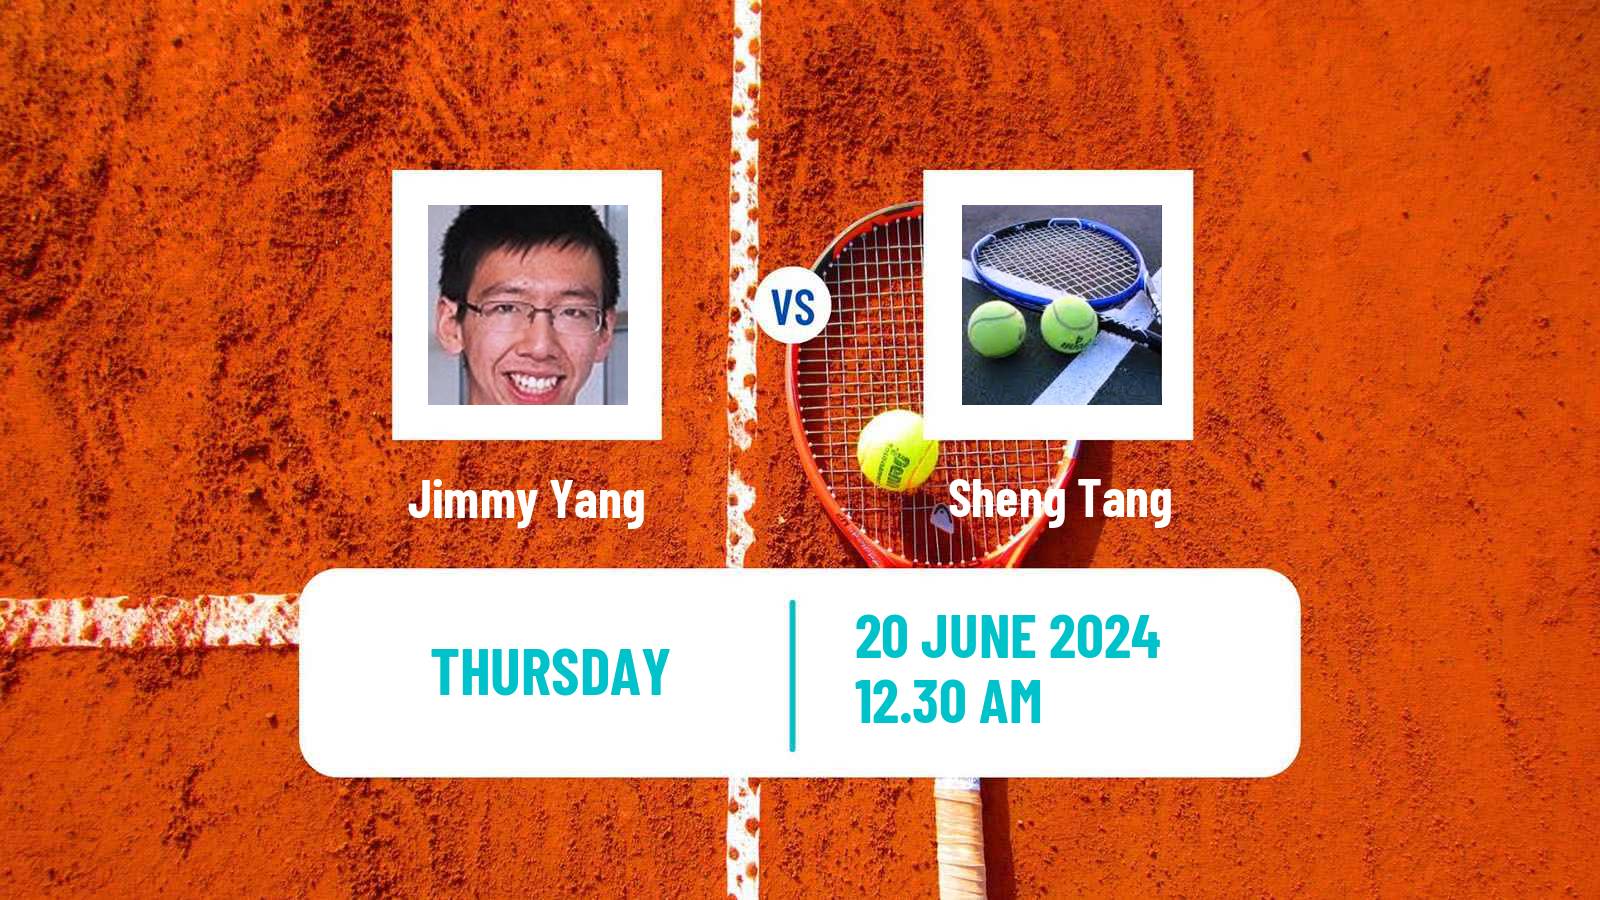 Tennis ITF M25 Luzhou Men Jimmy Yang - Sheng Tang